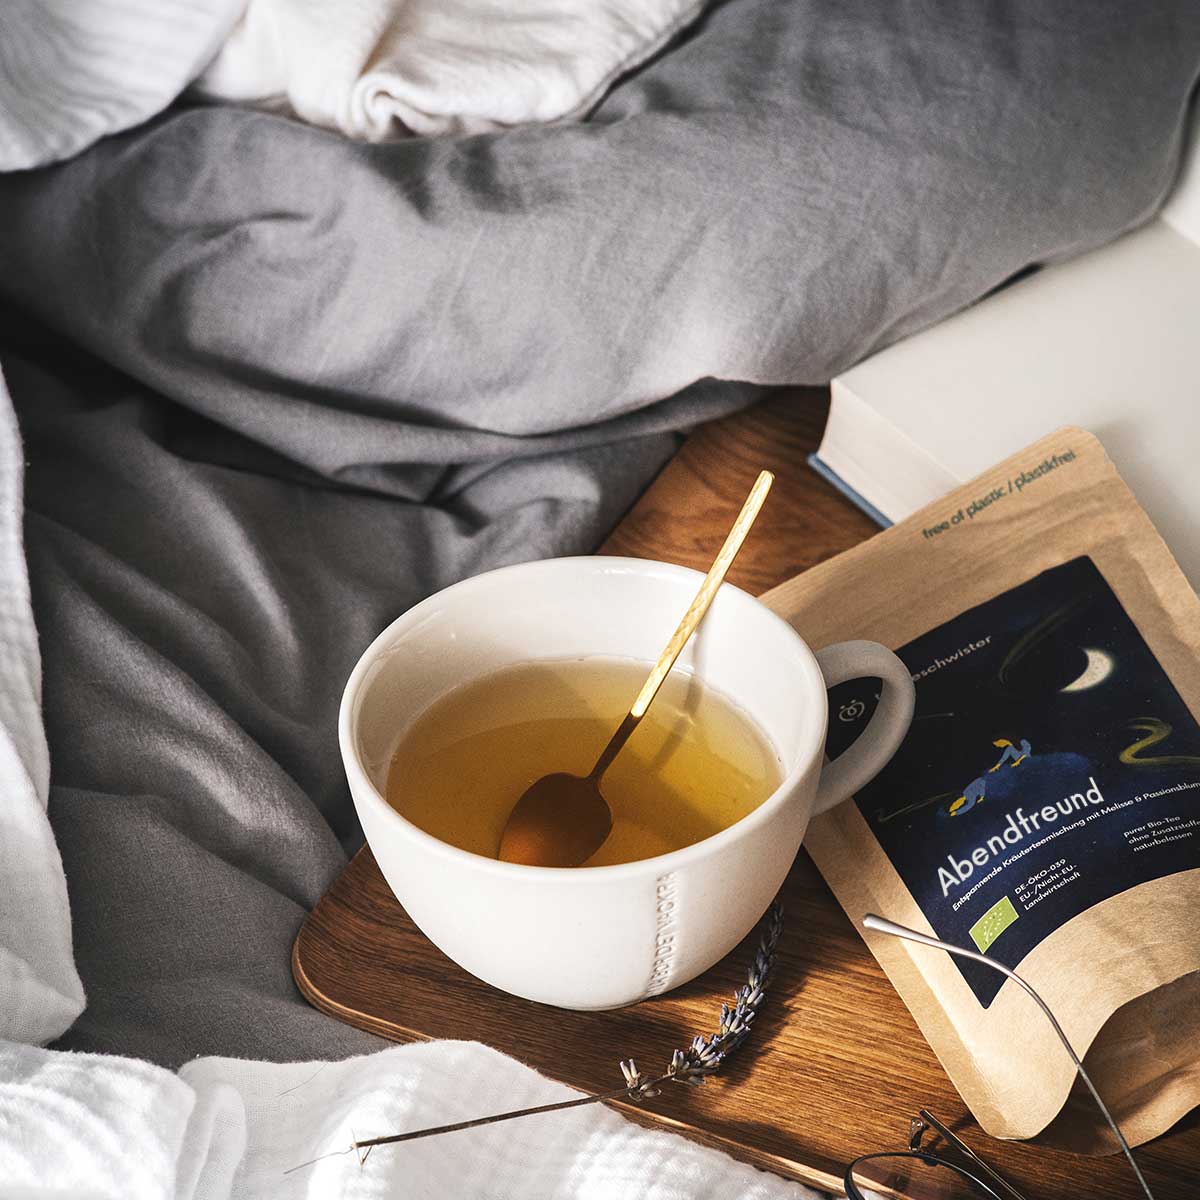 In diesem Bild sieht man den Abendtee zum einschlafen auf einem Bett mit einer Tasse aufgegossenen Tee.